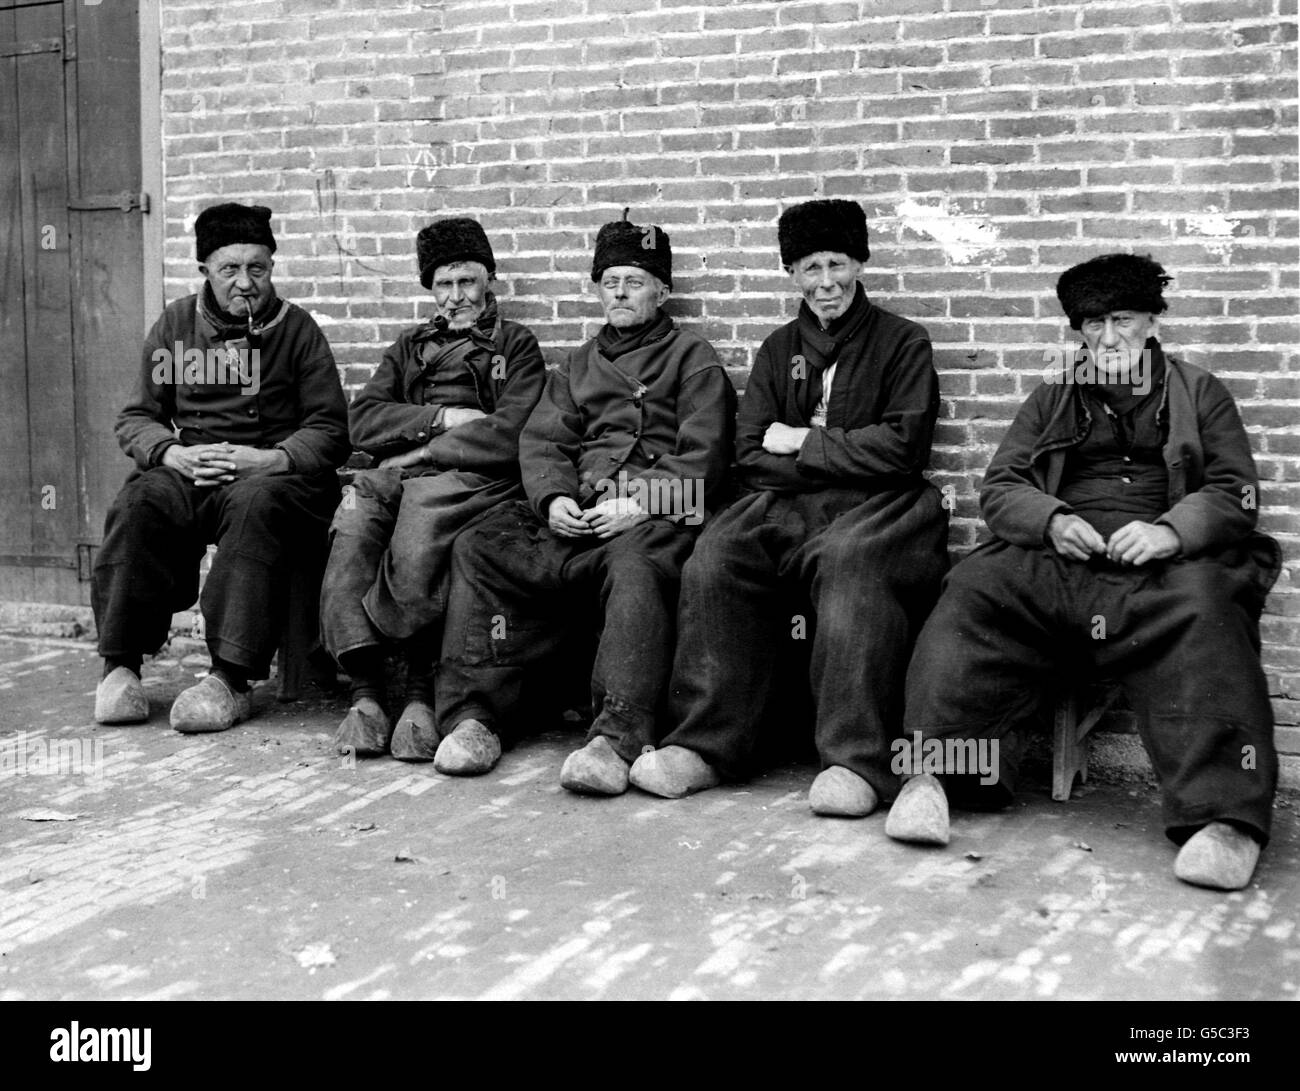 HOLLAND 1910: Un gruppo di anziani Dutchmen che indossano il costume tradizionale a Marken, Paesi Bassi. Tutti gli uomini indossano zoccoli e cappelli in pelliccia. Foto Stock